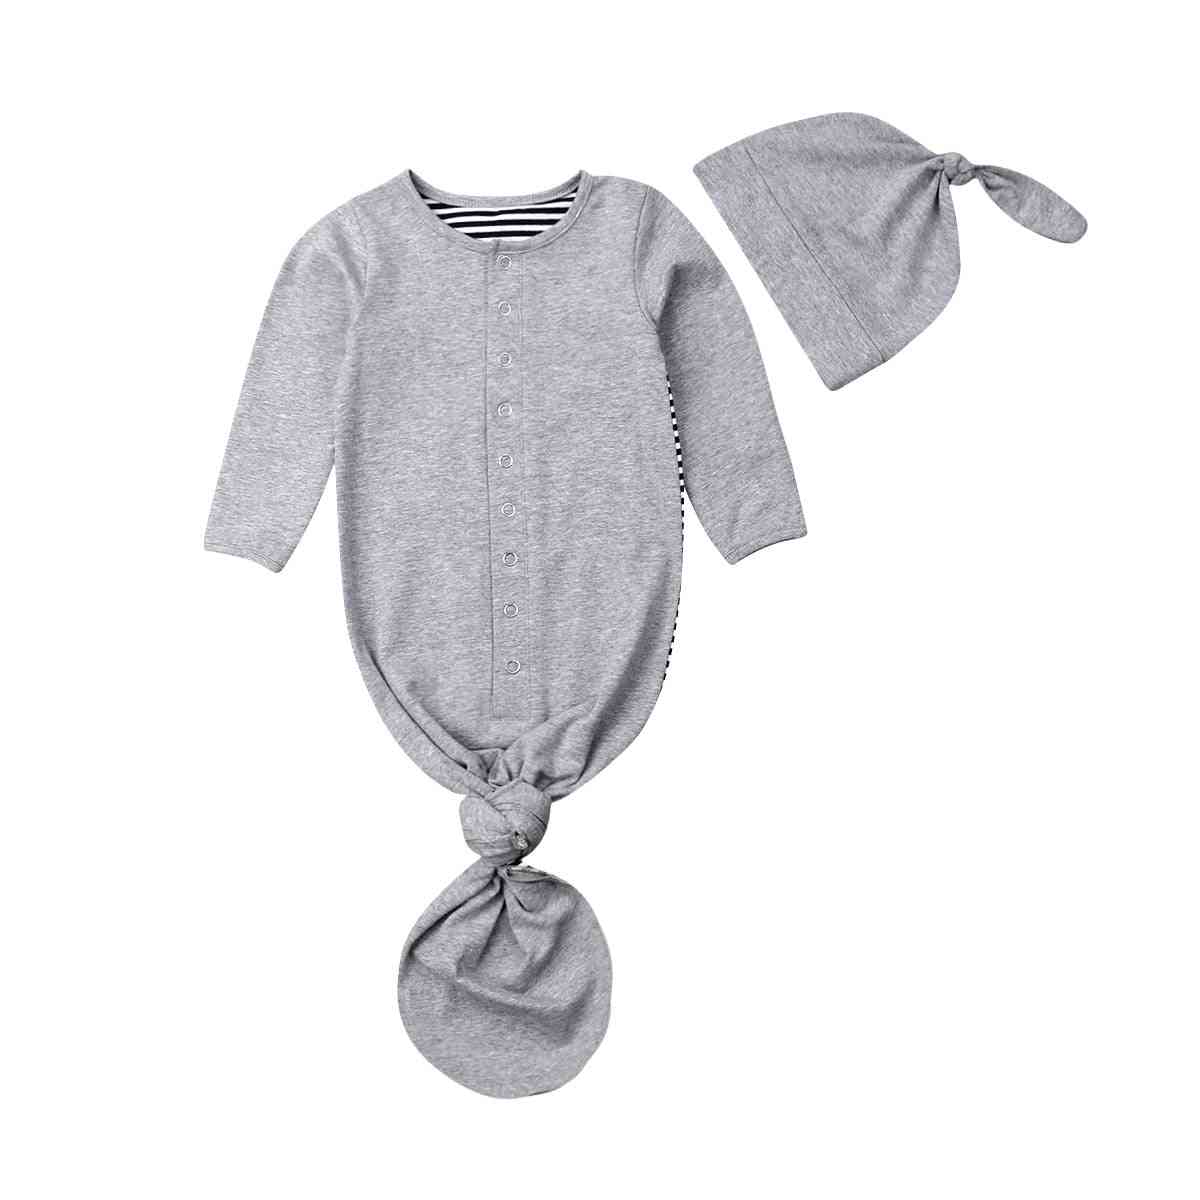 Coperta per neonato / bambino per neonato, coperta per passeggino avvolgente con sacco a pelo, cappelli per coperta in cotone a righe